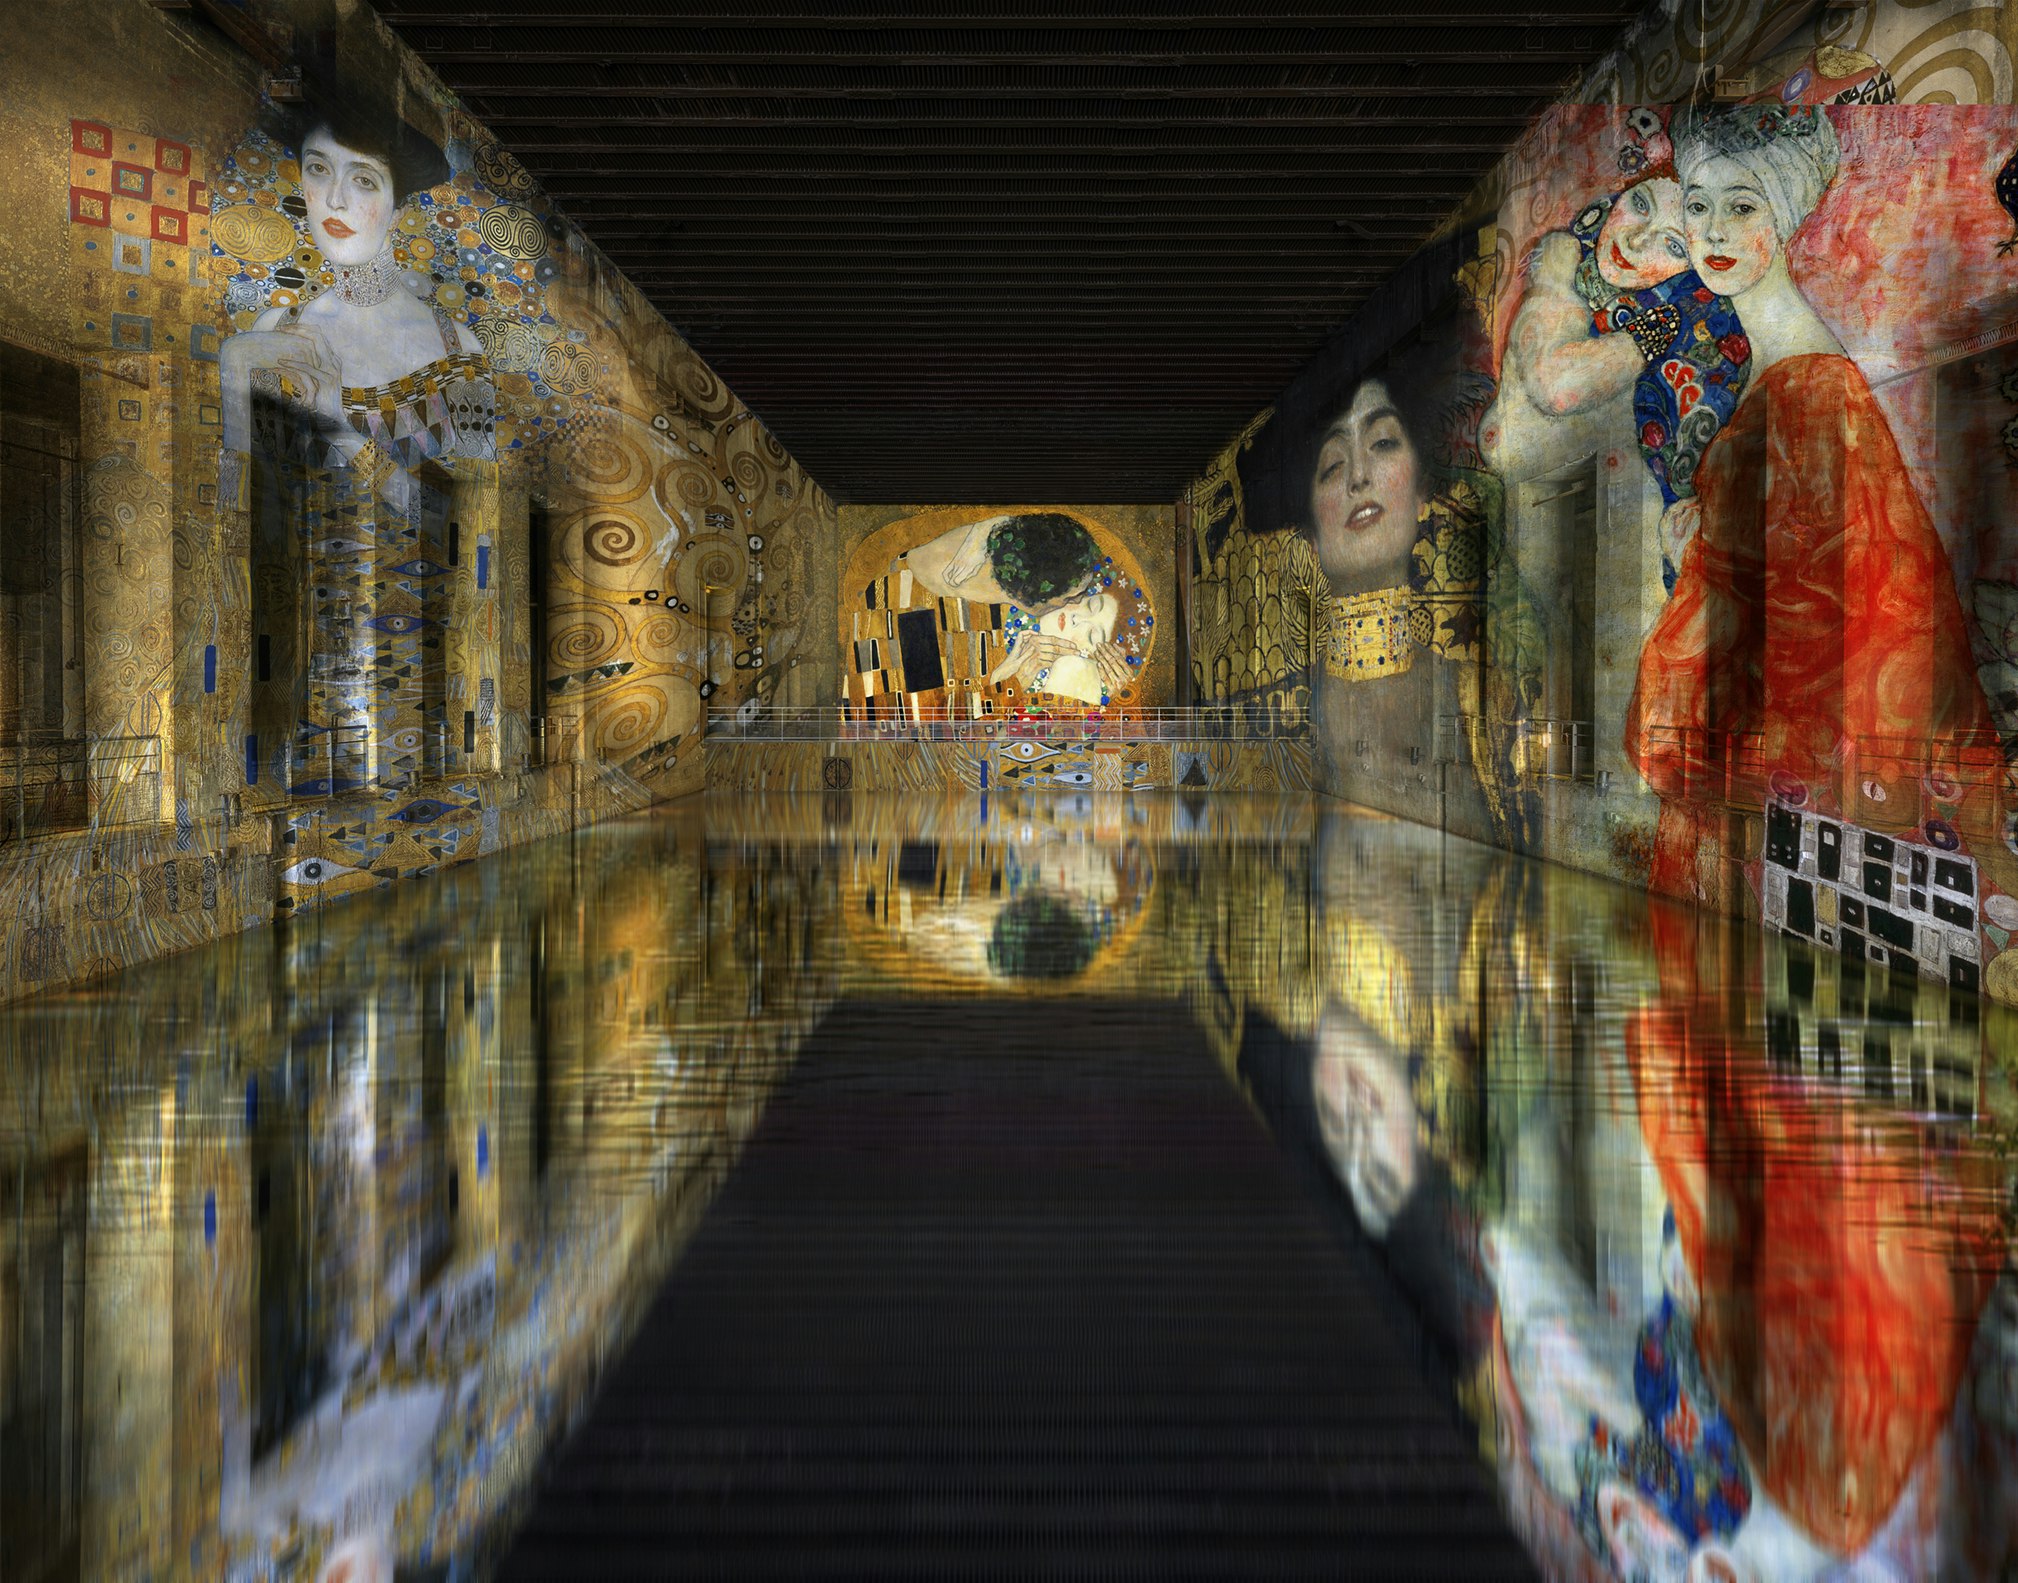 Colourful digital artwork in a dark underground museum